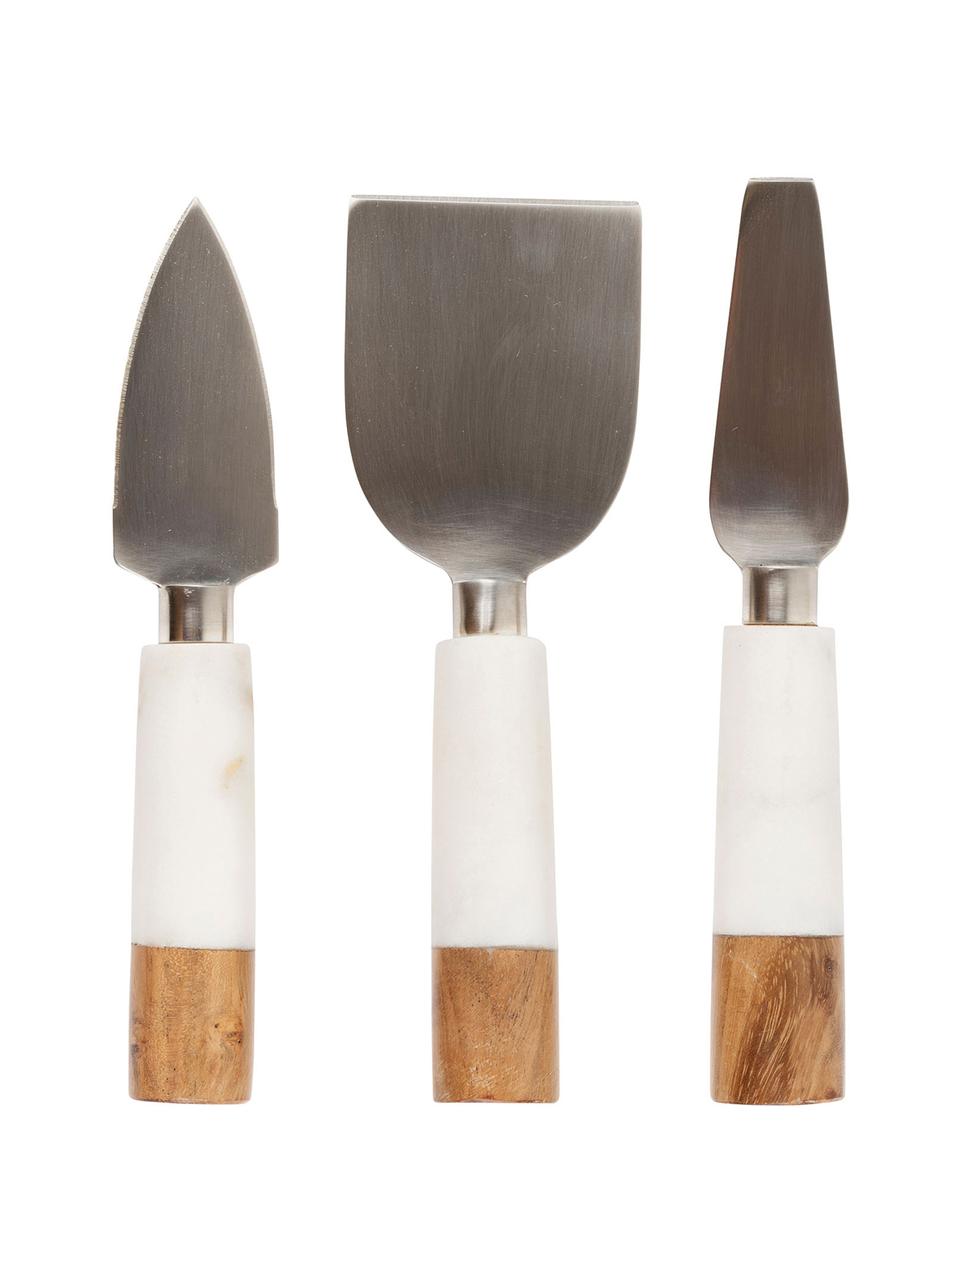 Set de cuchillos de queso en mármol Nevada, 3 pzas., Acero inoxidable, mármol, madera, Beige, blanco, L 21 cm